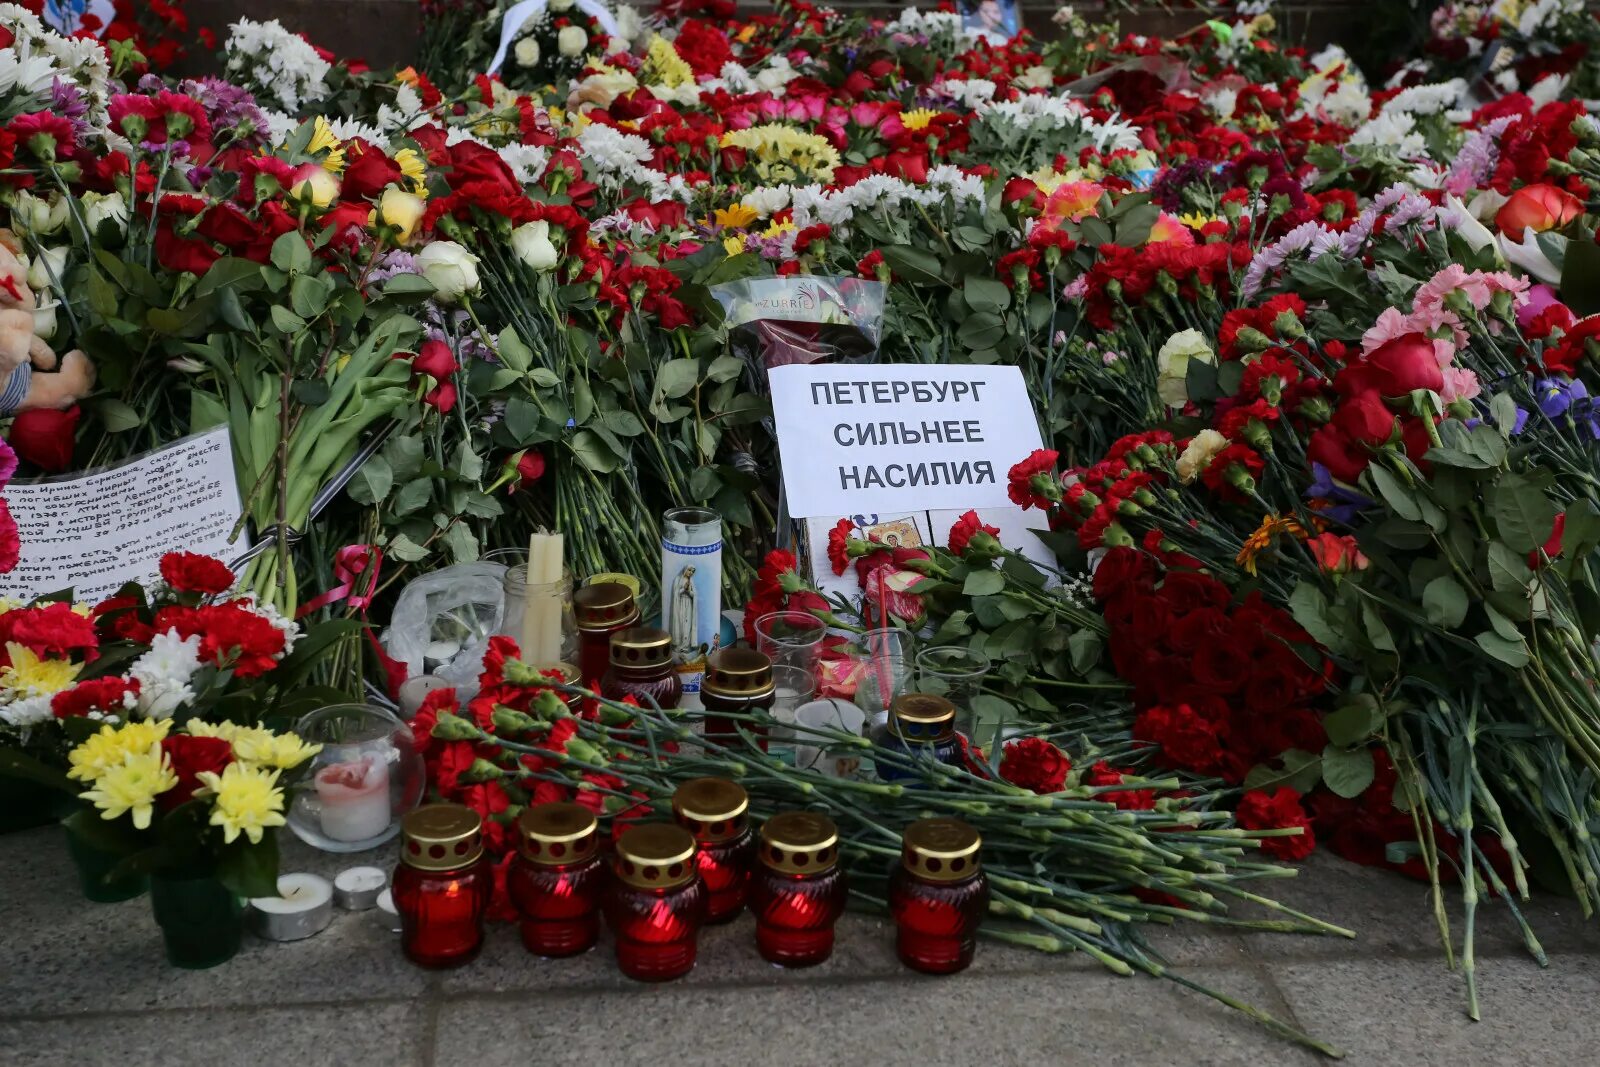 Список погибших в москве во время теракта. 3 Апреля 2017 Санкт-Петербург. Теракт в Санкт-Петербурге 3 апреля. 3 Апреля 2017 года Питер теракт.